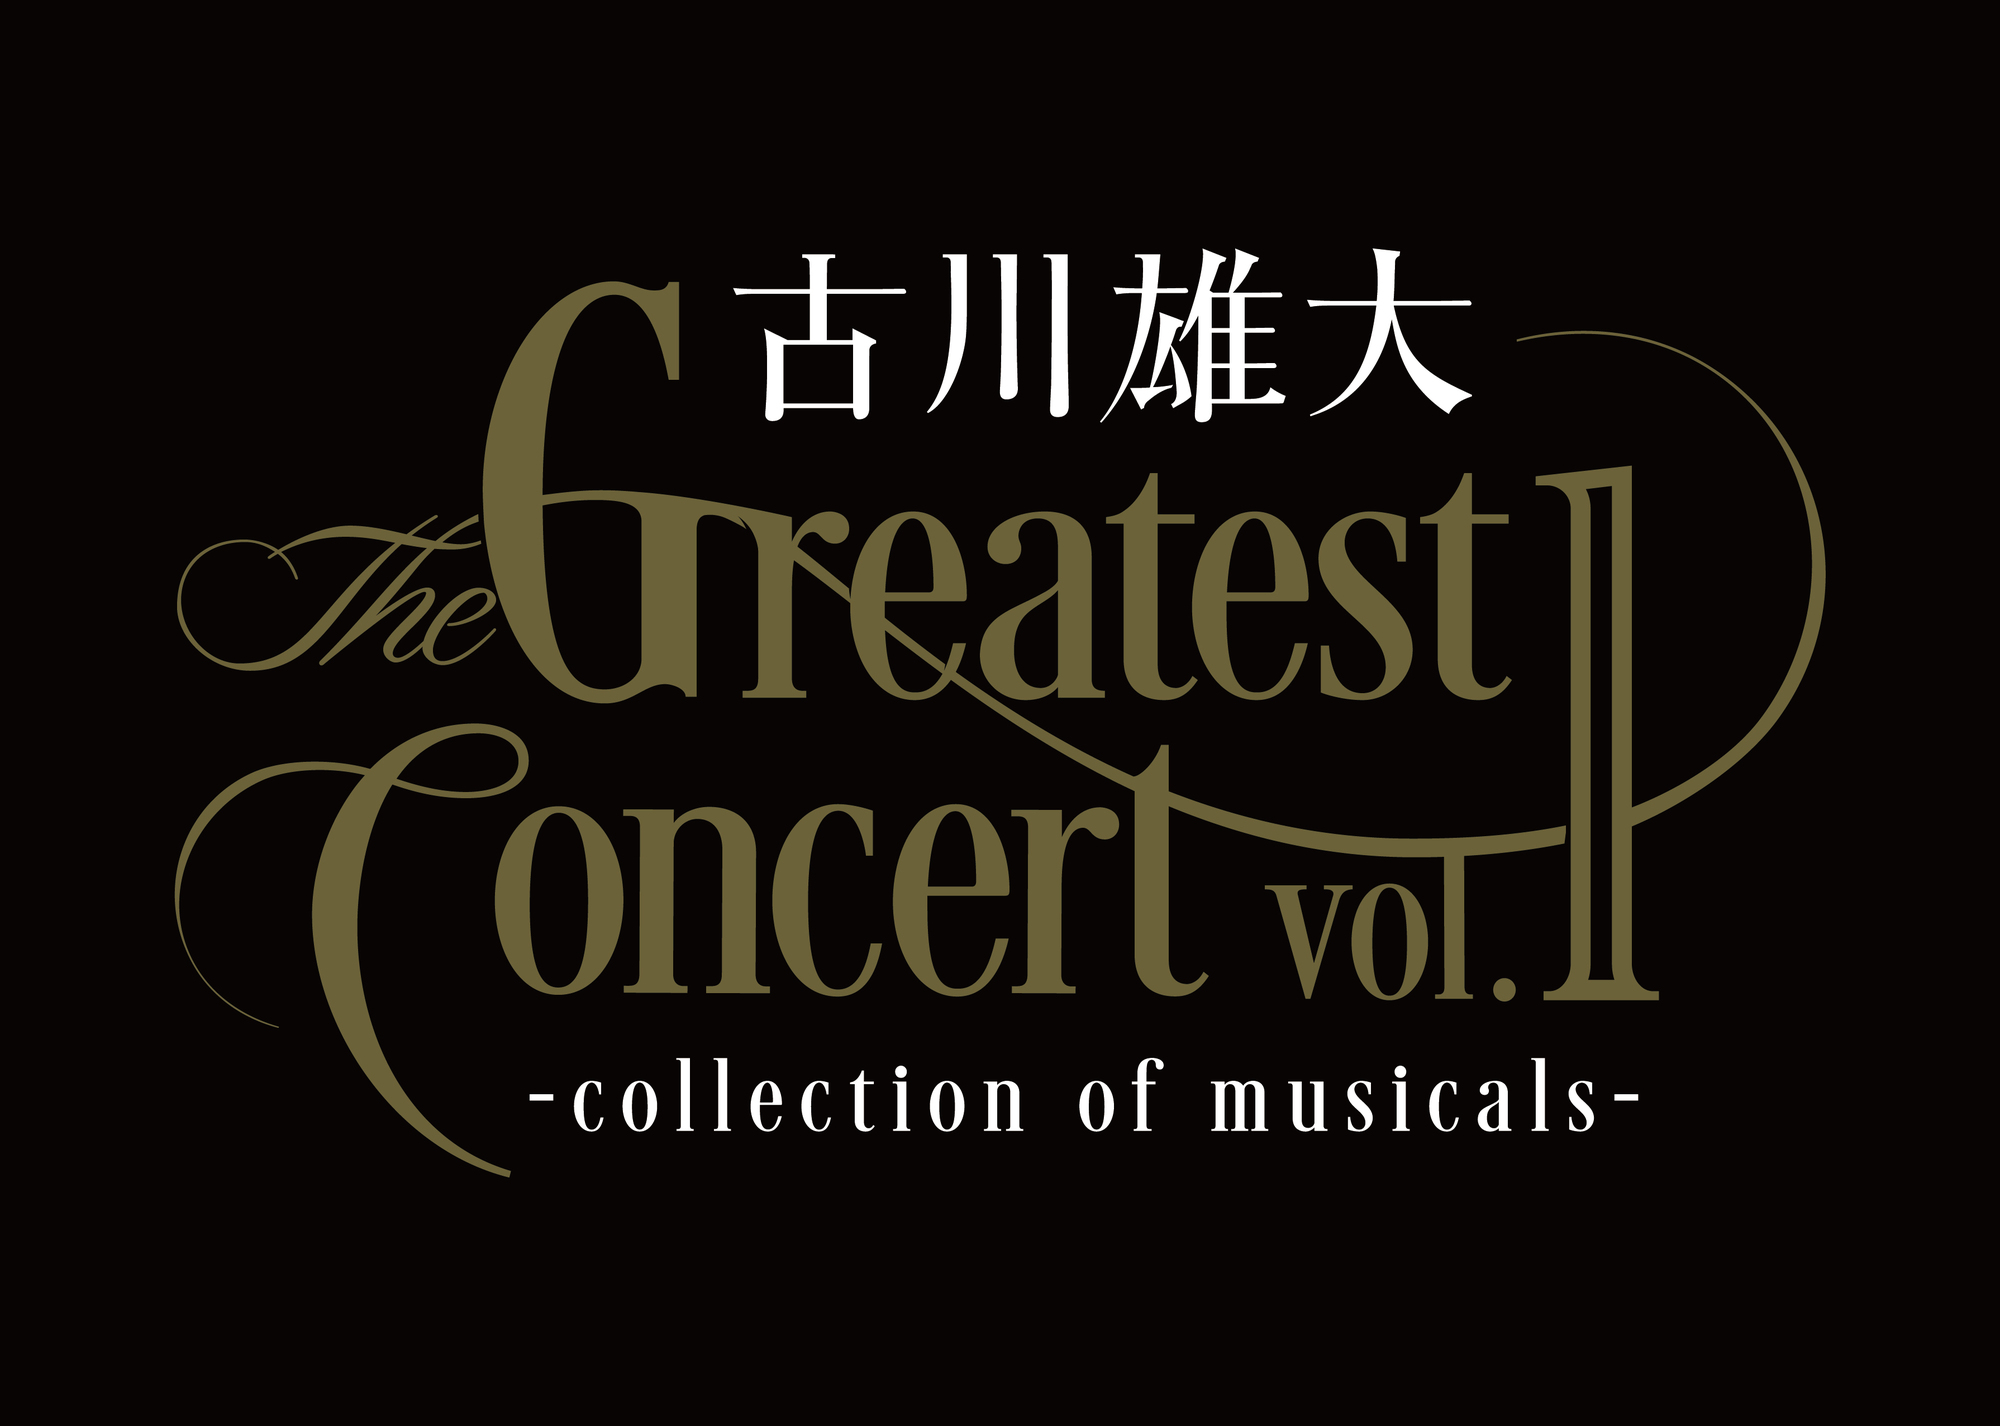 古川雄大【特典付】古川雄大 The Greatest Concert vol.1